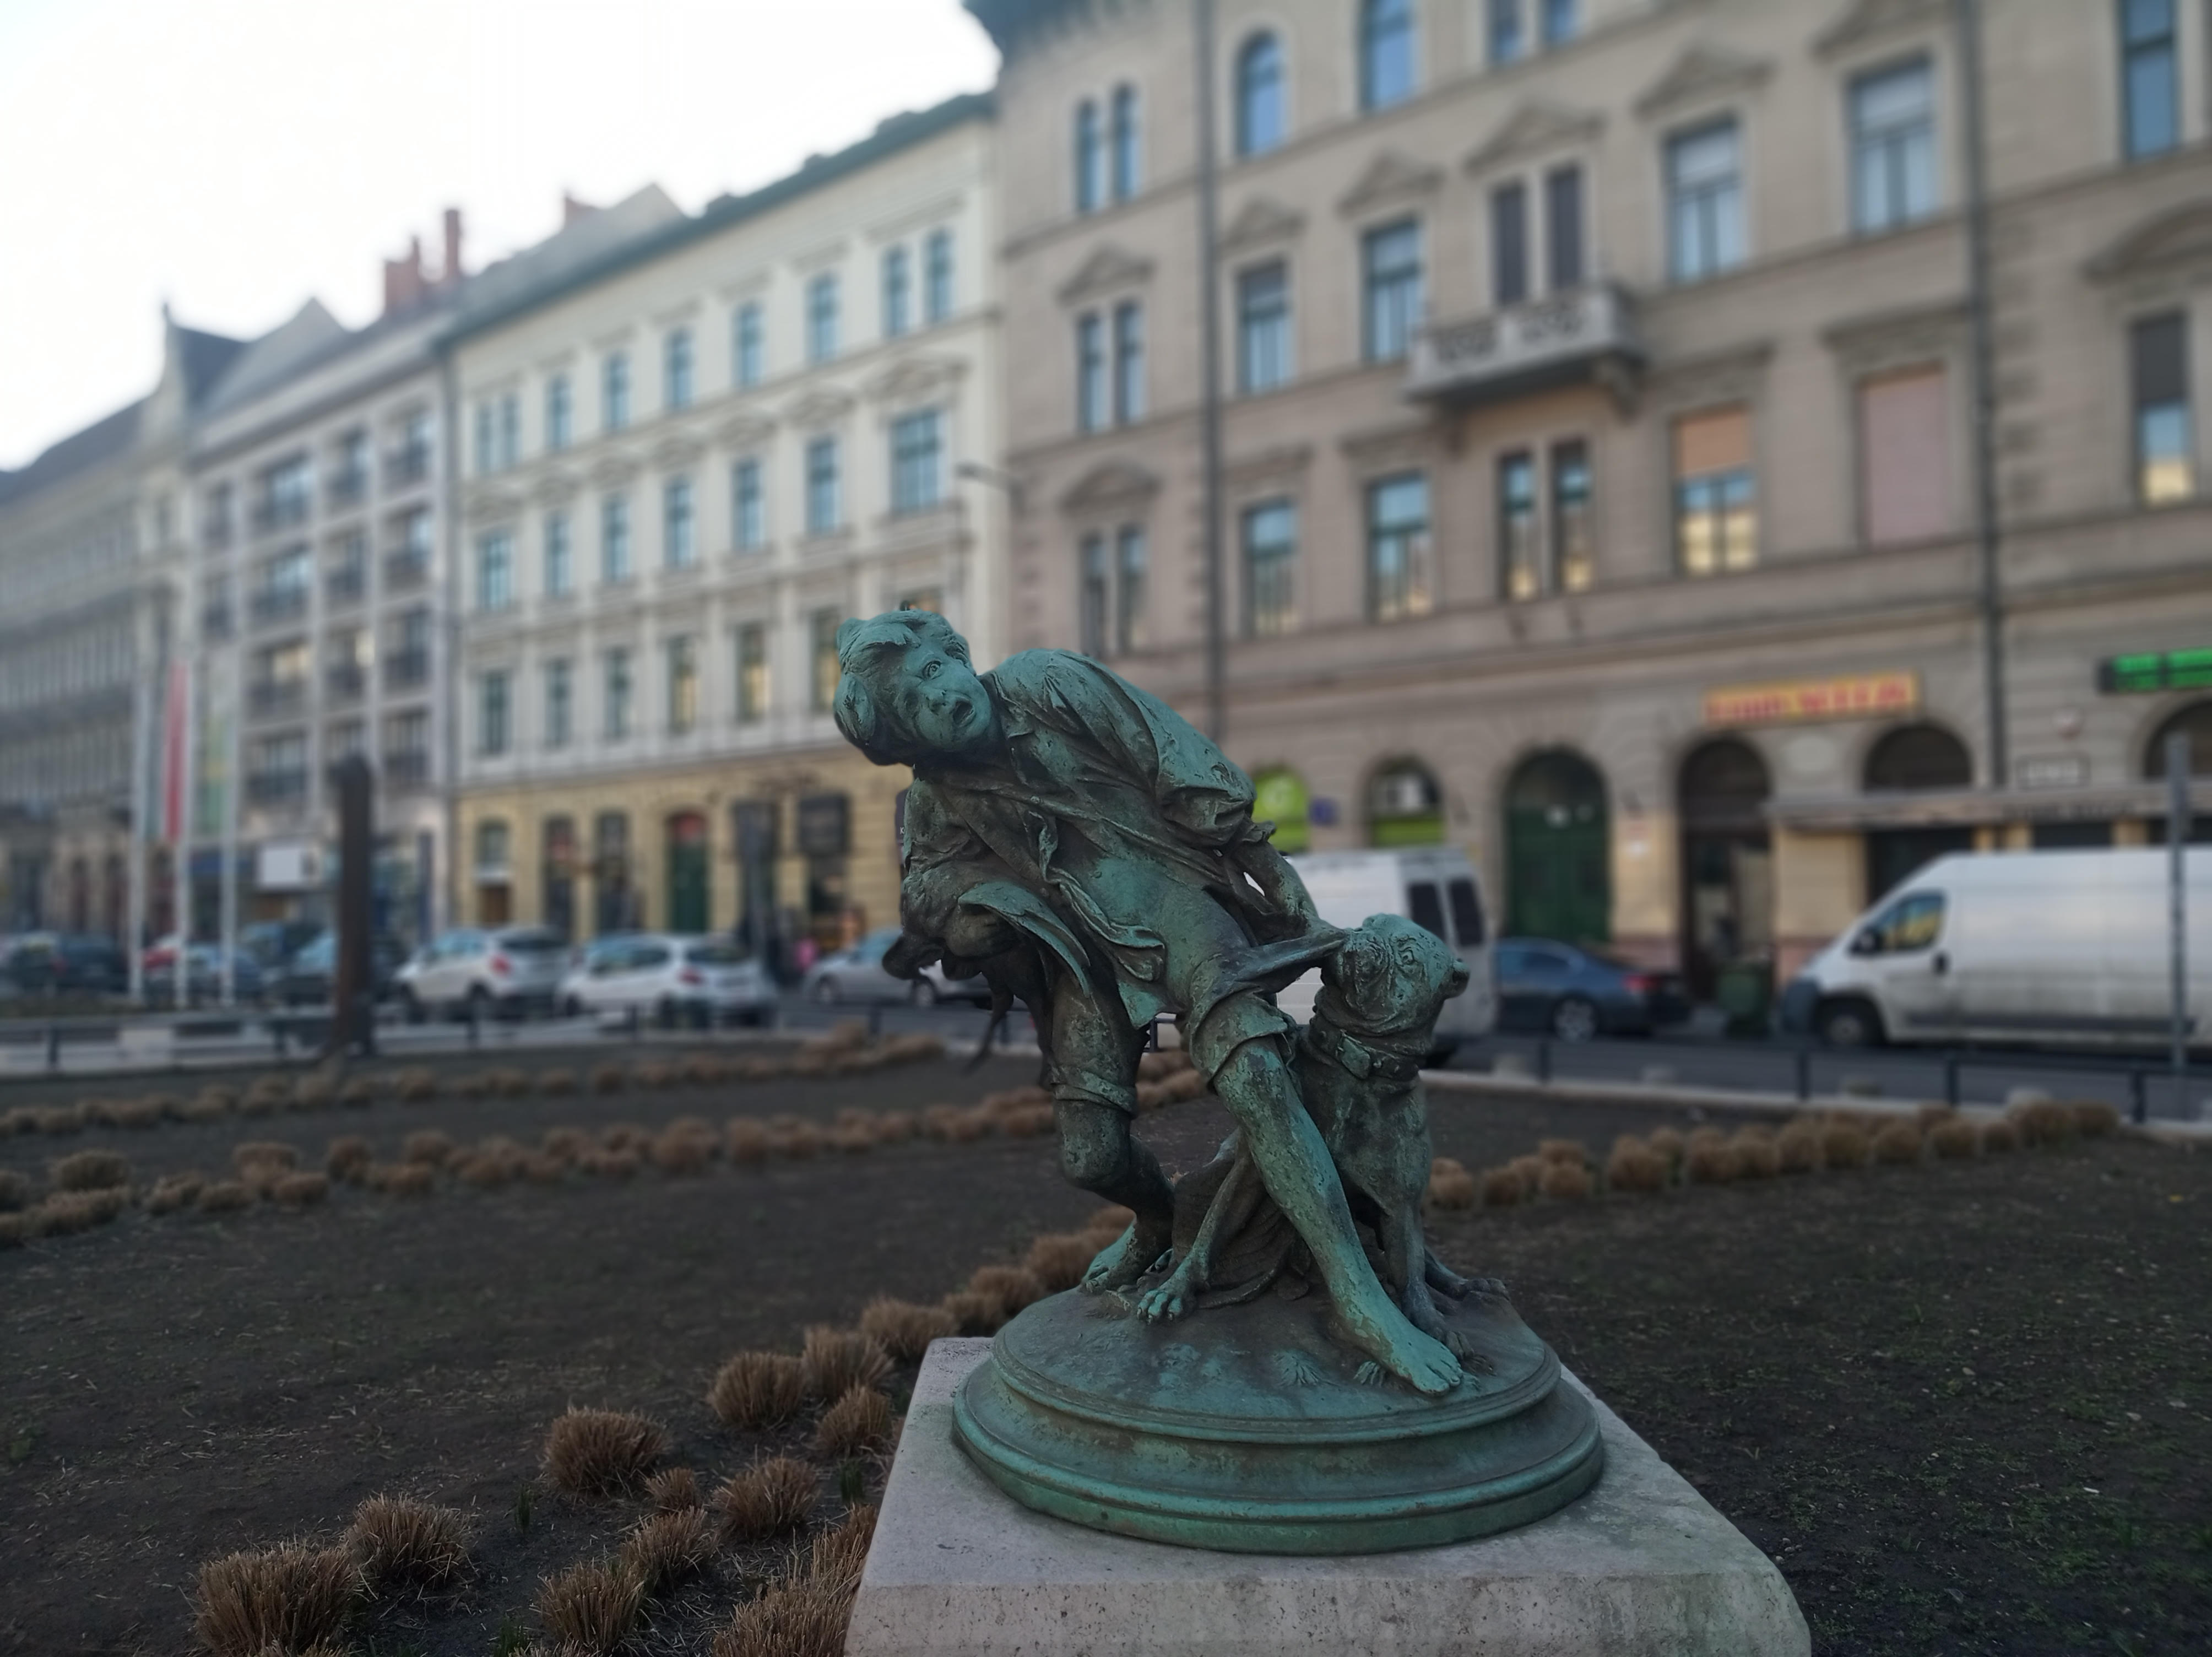 Árpád: Sokszor elmentem már mellette és mindig annyira szürreálisnak tartottam ezt a szobrot, hogy február végén eszembe jutott lefotózni. Aztán most átvitt értelemben itt ez a gyerek: a kollektív életünk, amit jól megcibál ez a kutya-járvány.    Budapest, Krúdy Gyula utca, február 28.